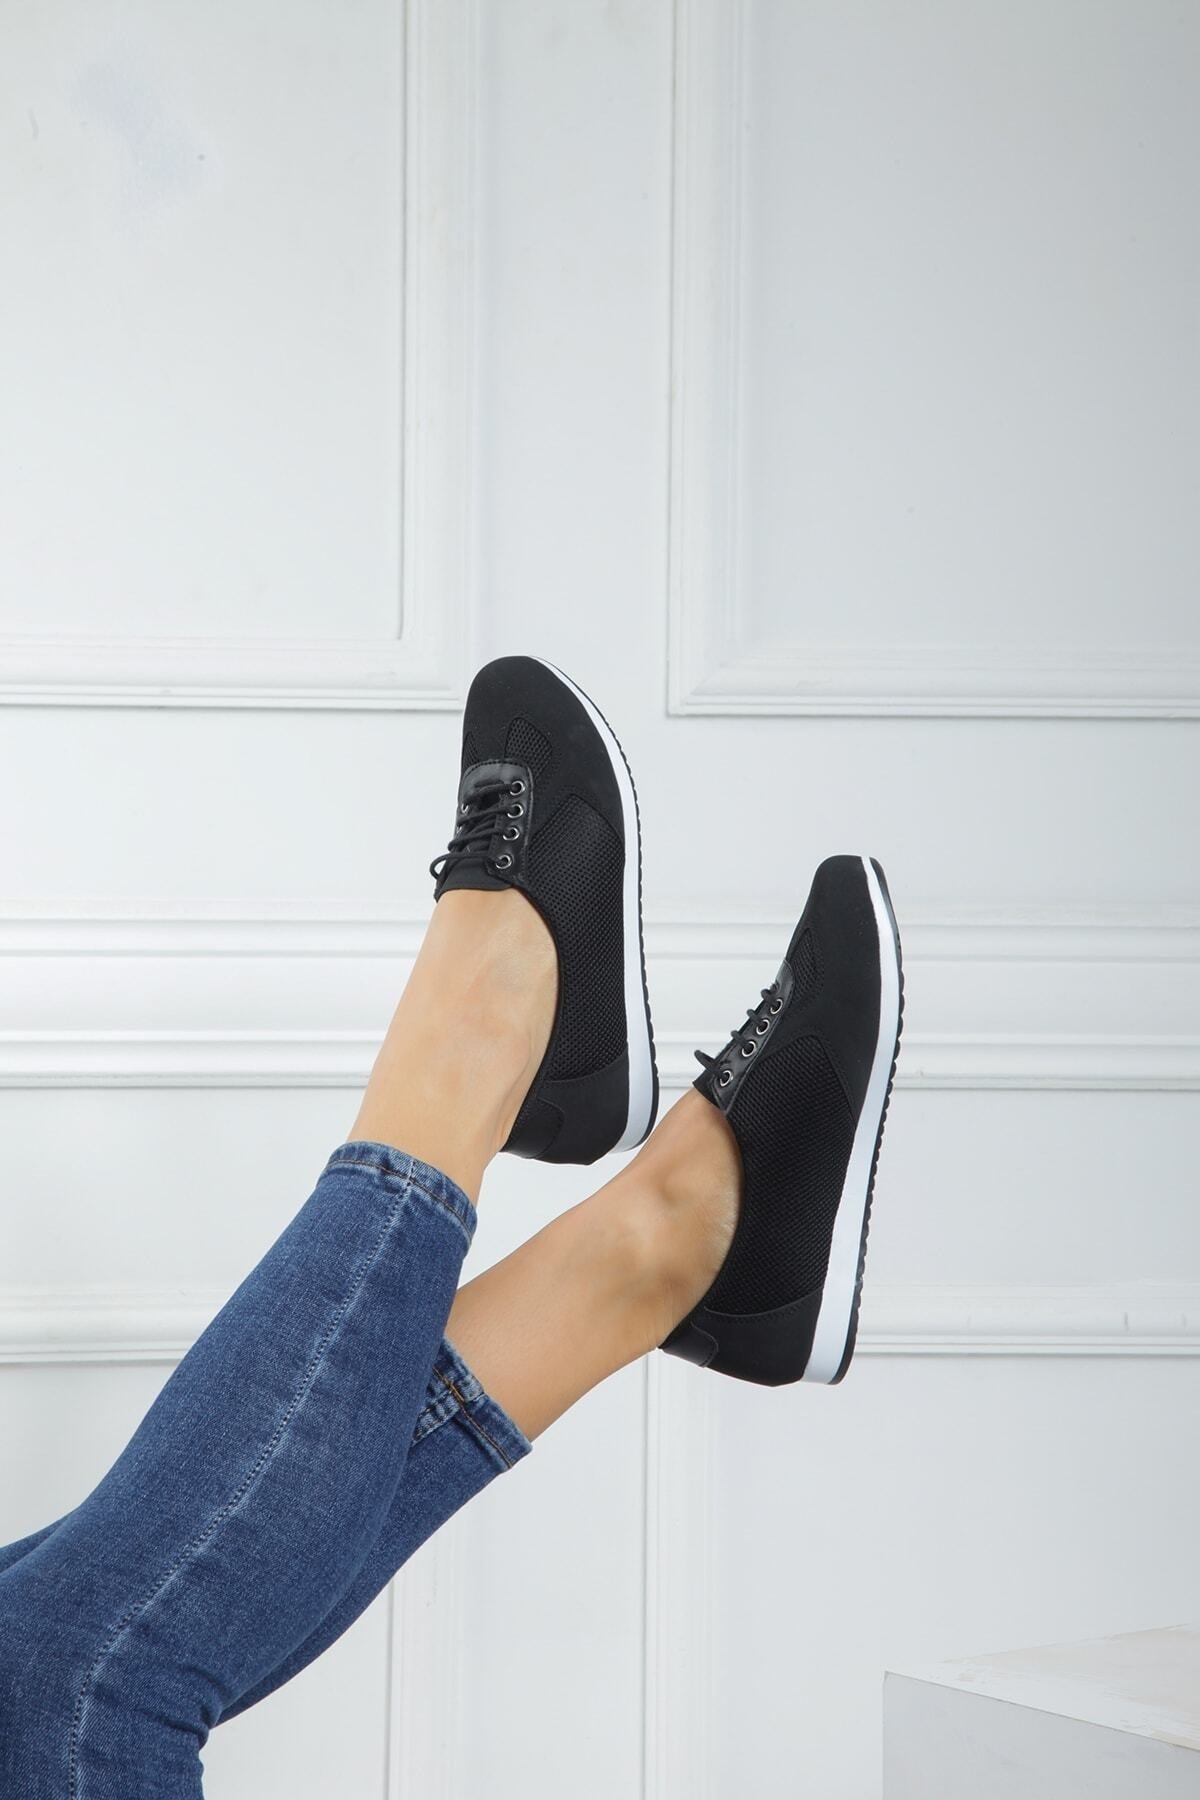 expres moda Kadın Siyah Renk Bağcıklı Termo Taban Günlük Klasik Babet Ayakkabı